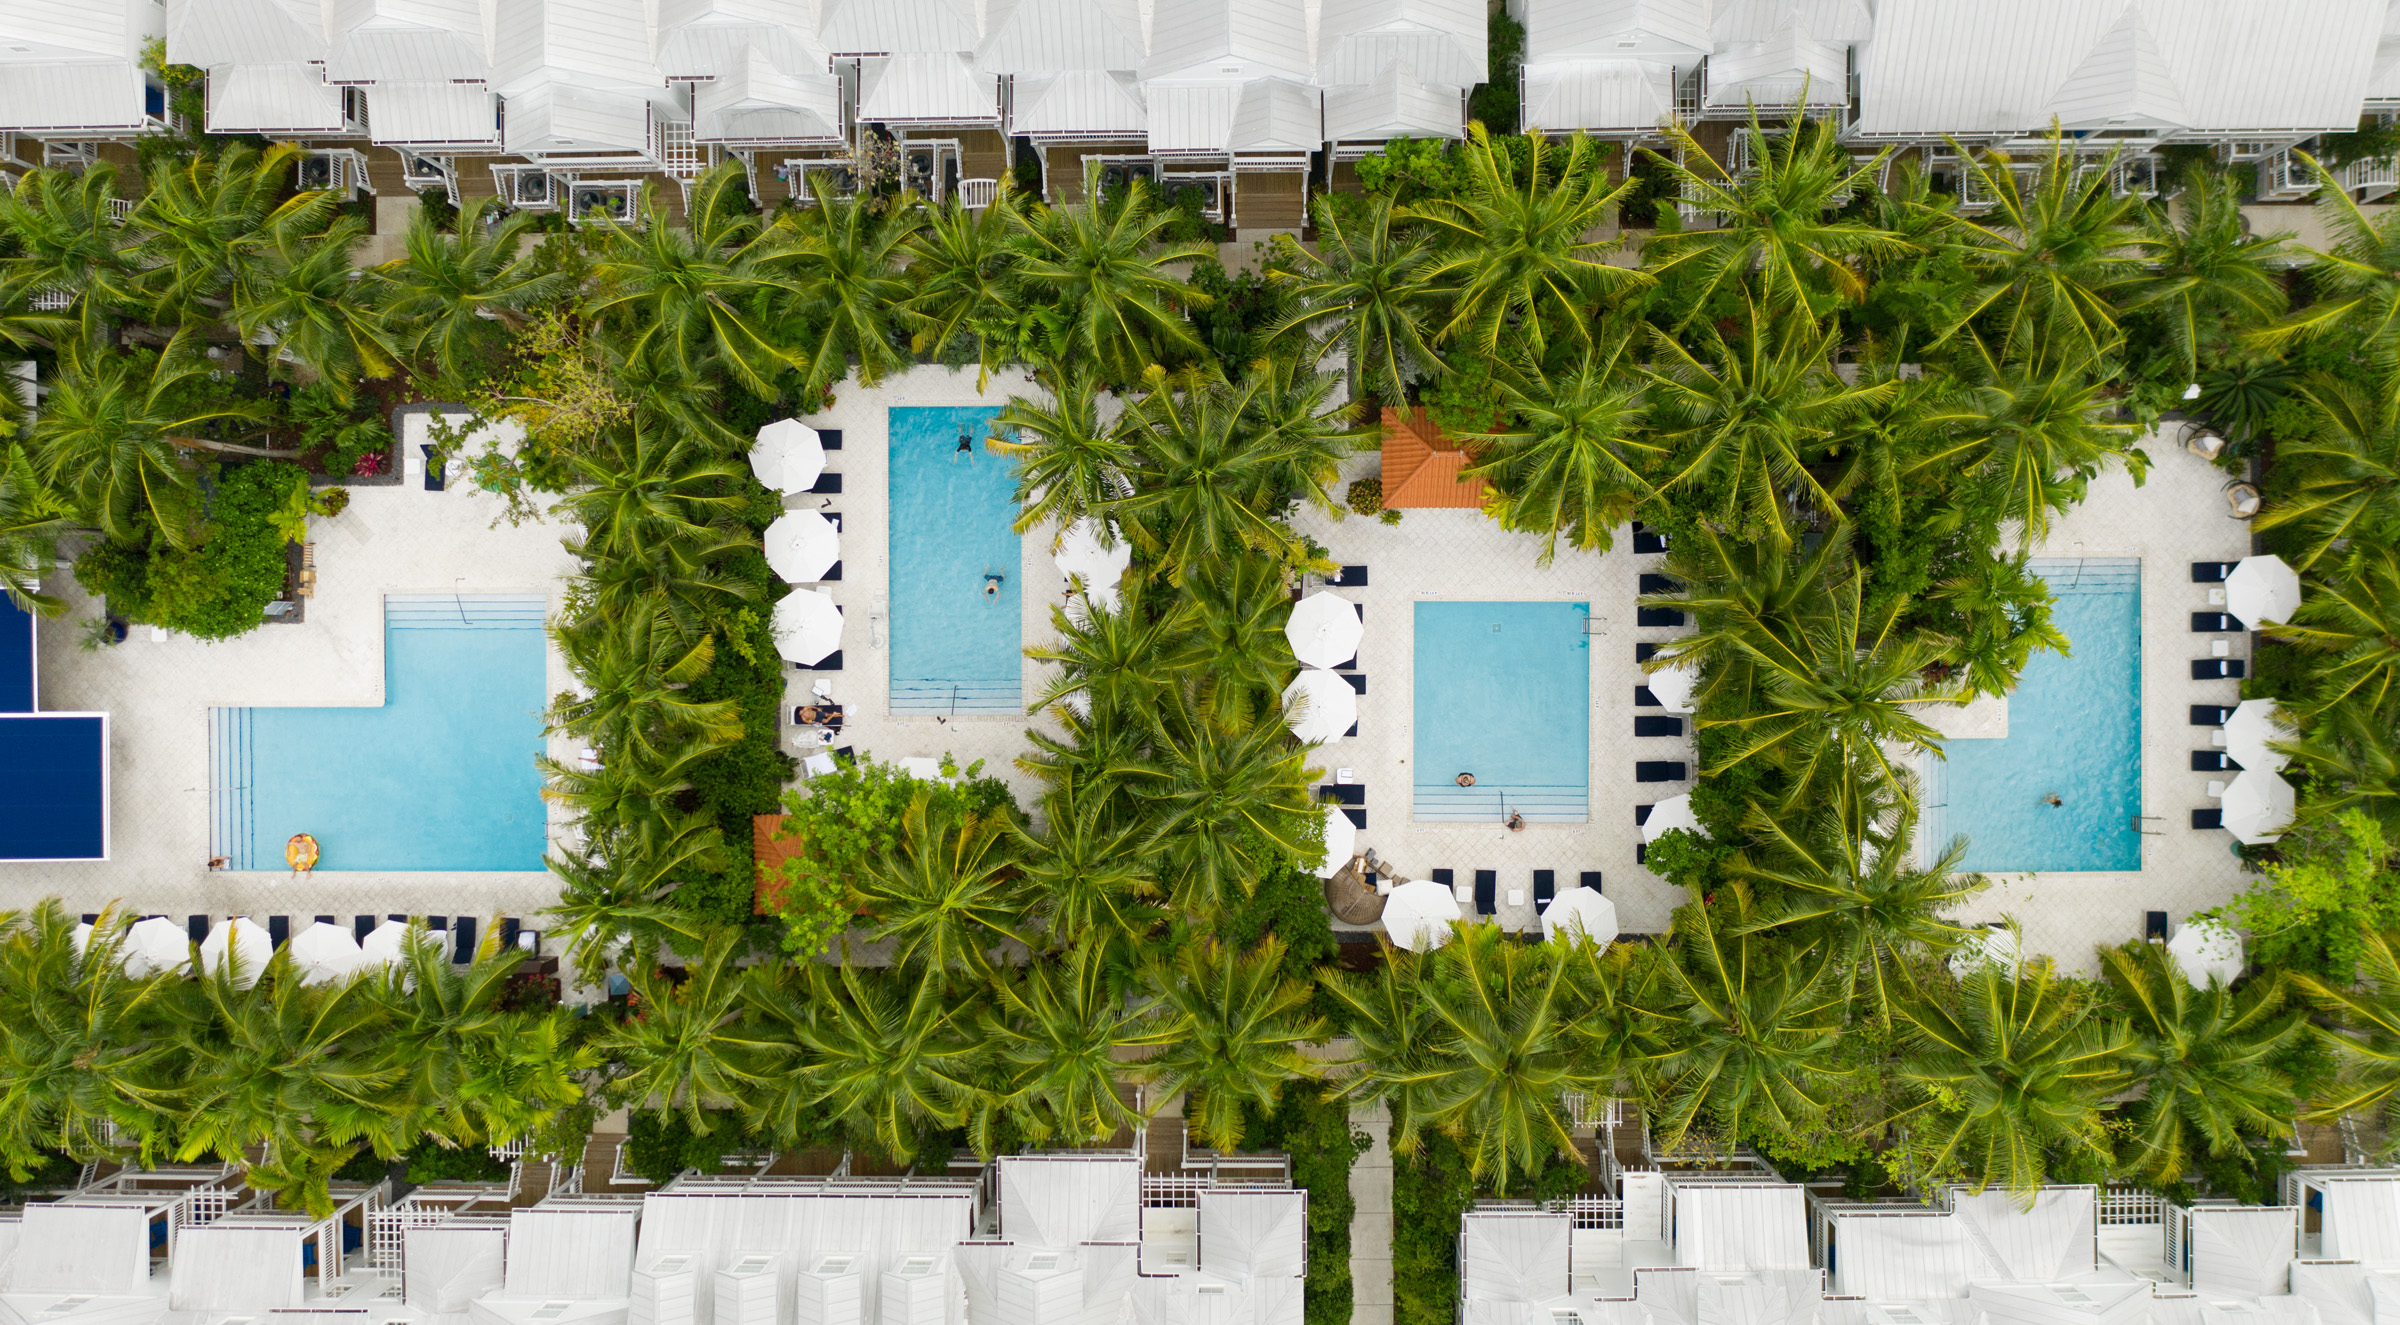 The reimagined Parrot Key Hotel & Villas in Key West